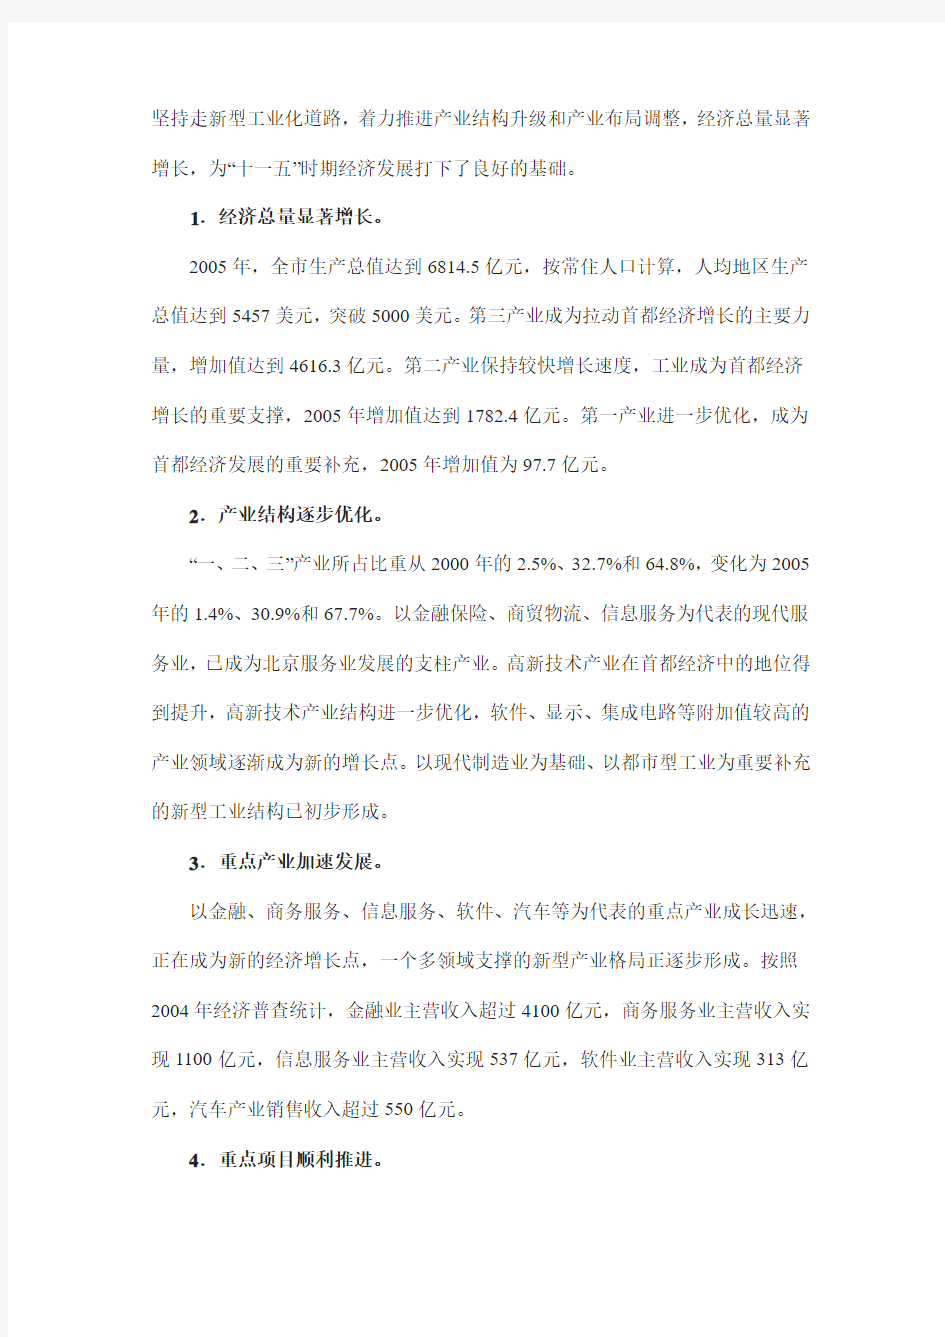 北京市十一五时期产业发展与空间布局调整规划